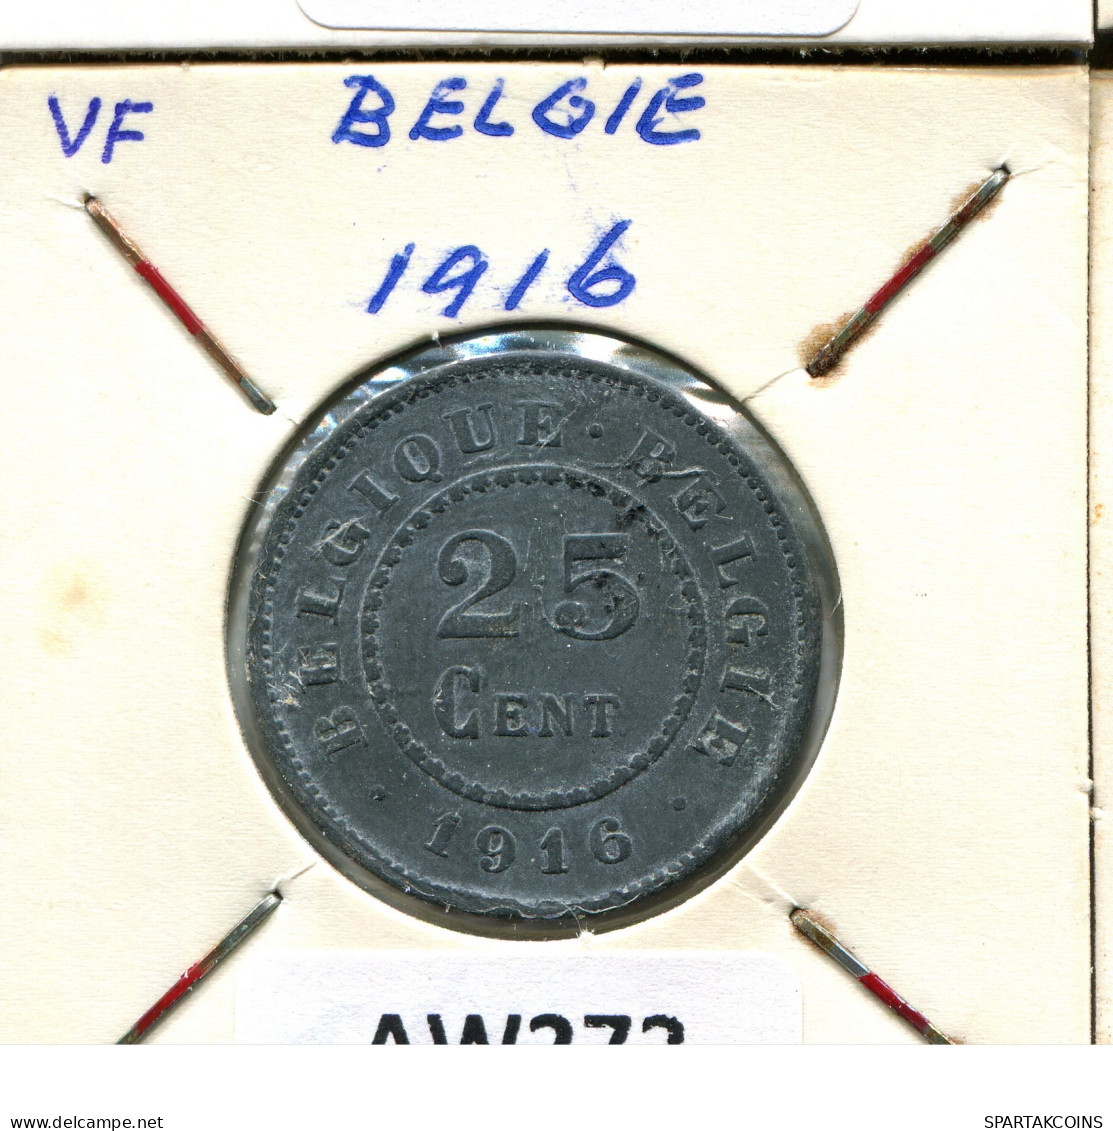 25 CENTIMES 1916 BELGIQUE-BELGIE BELGIQUE BELGIUM Pièce #AW272.F - 25 Centimes